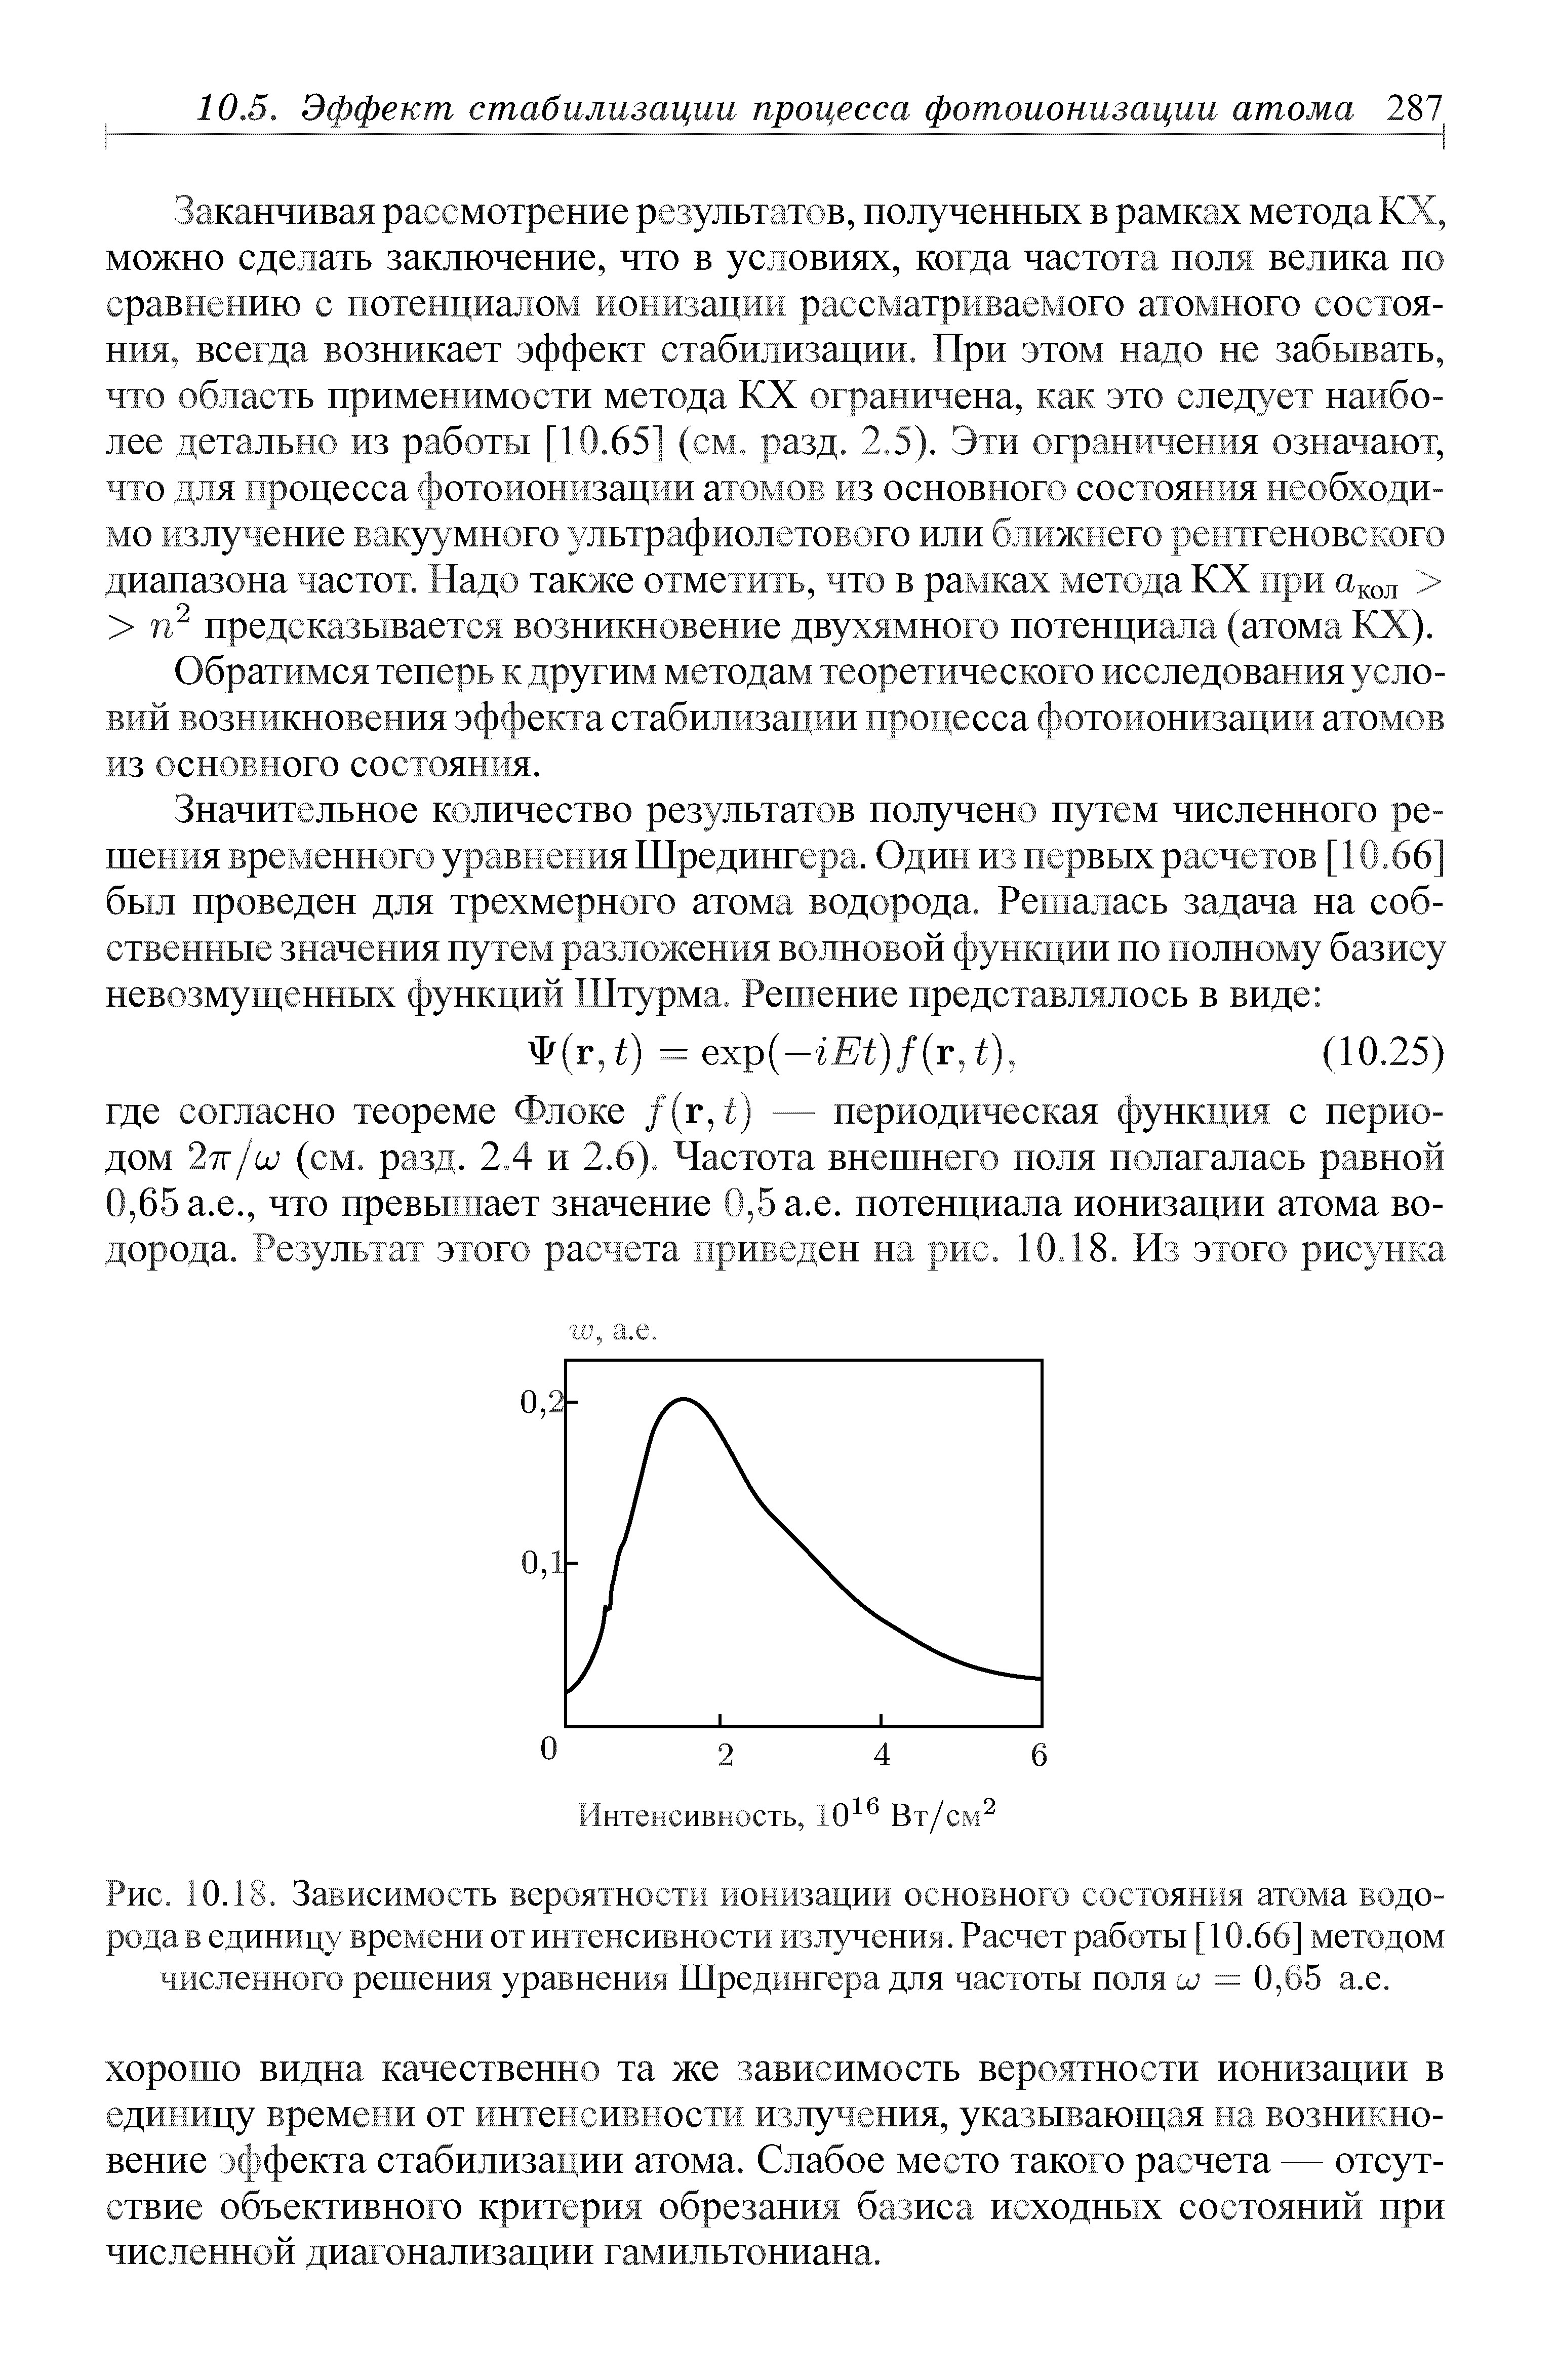 Рис. 10.18. Зависимость вероятности ионизации <a href="/info/12627">основного состояния</a> атома водорода в единицу времени от <a href="/info/18861">интенсивности излучения</a>. Расчет работы [ 10.66] <a href="/info/21719">методом численного решения уравнения</a> Шредингера для частоты поля и) = 0,65 а.е.
